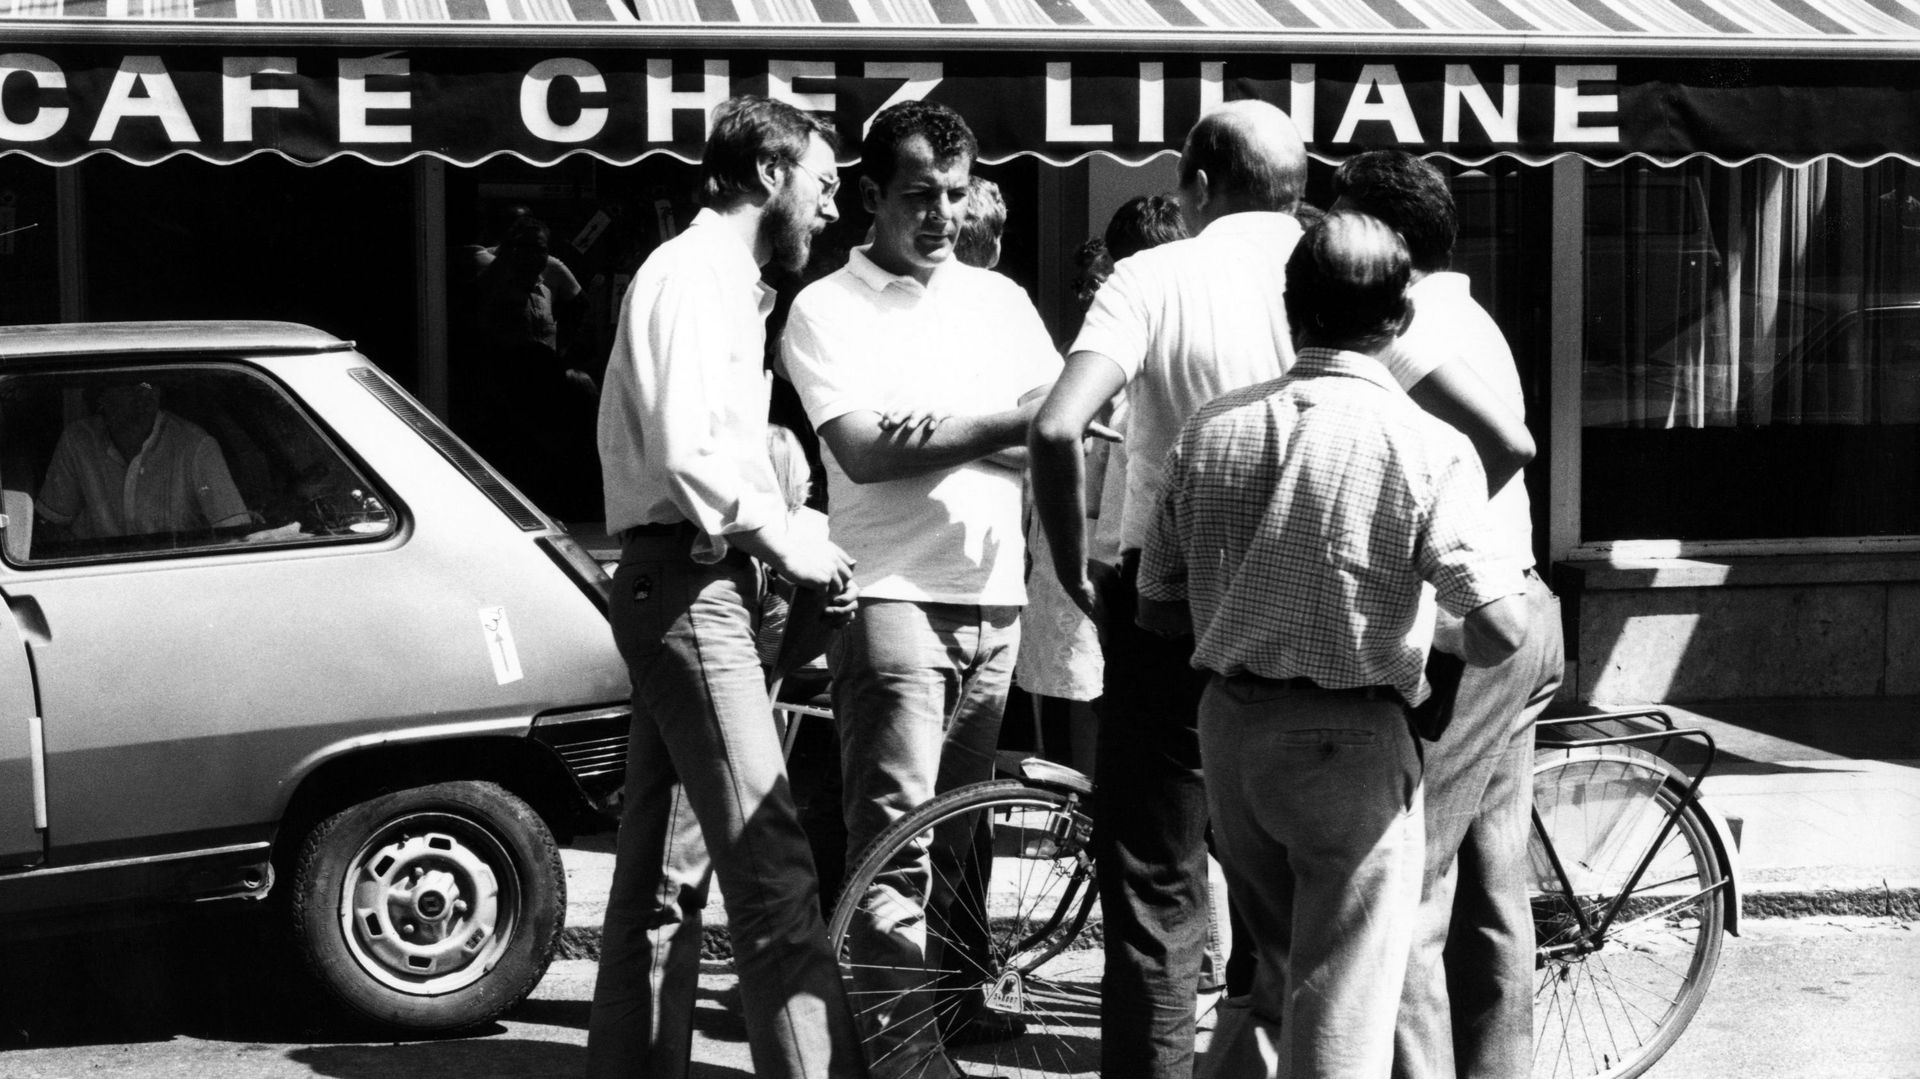 José Happart devant le café chez Liliane, Fourons, 1983